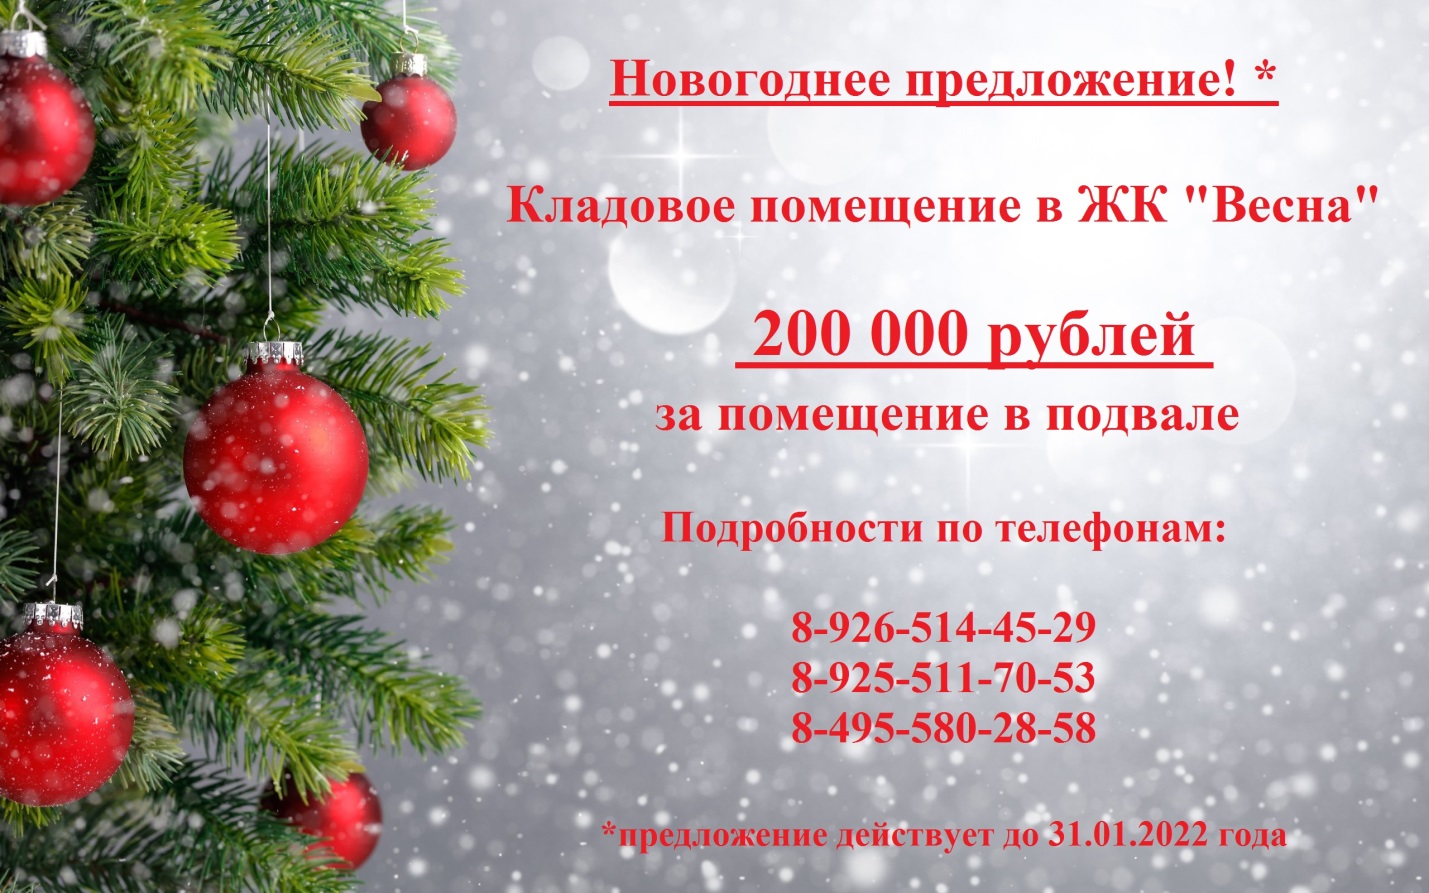 АКЦИЯ! Сейчас стоимость кладового помещения от 200 000 рублей.